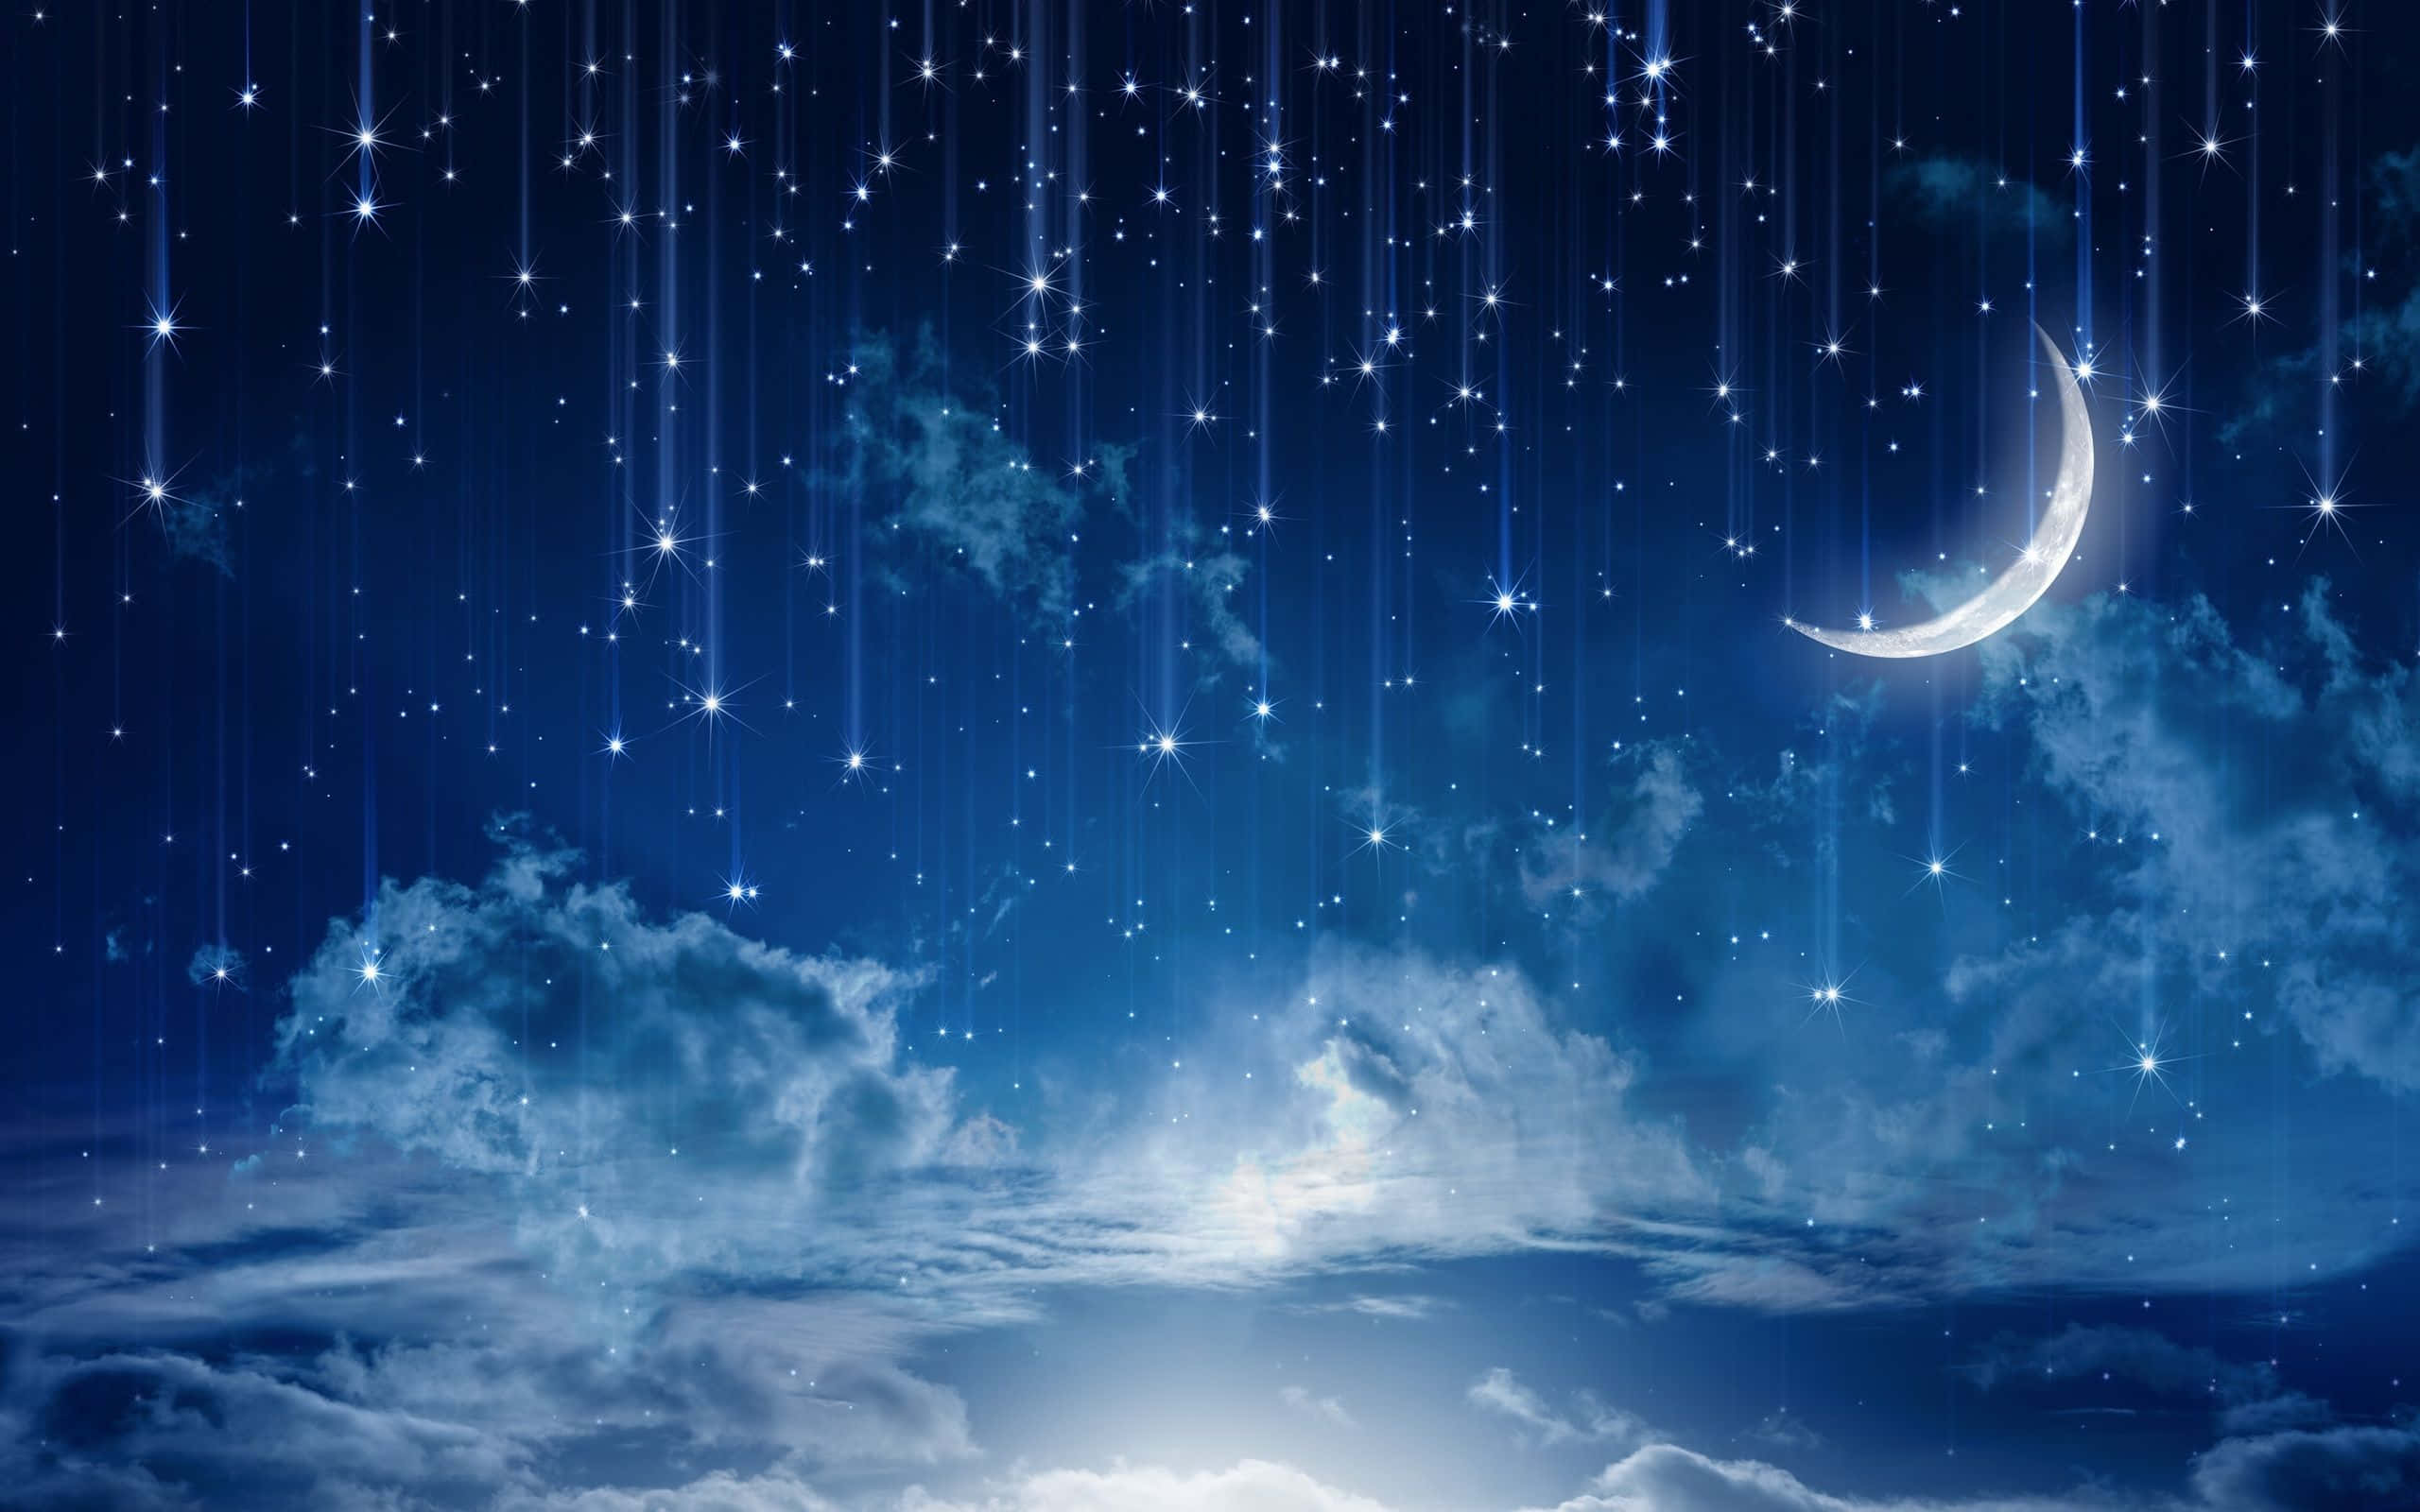 Captivating Moon and Stars Night Sky